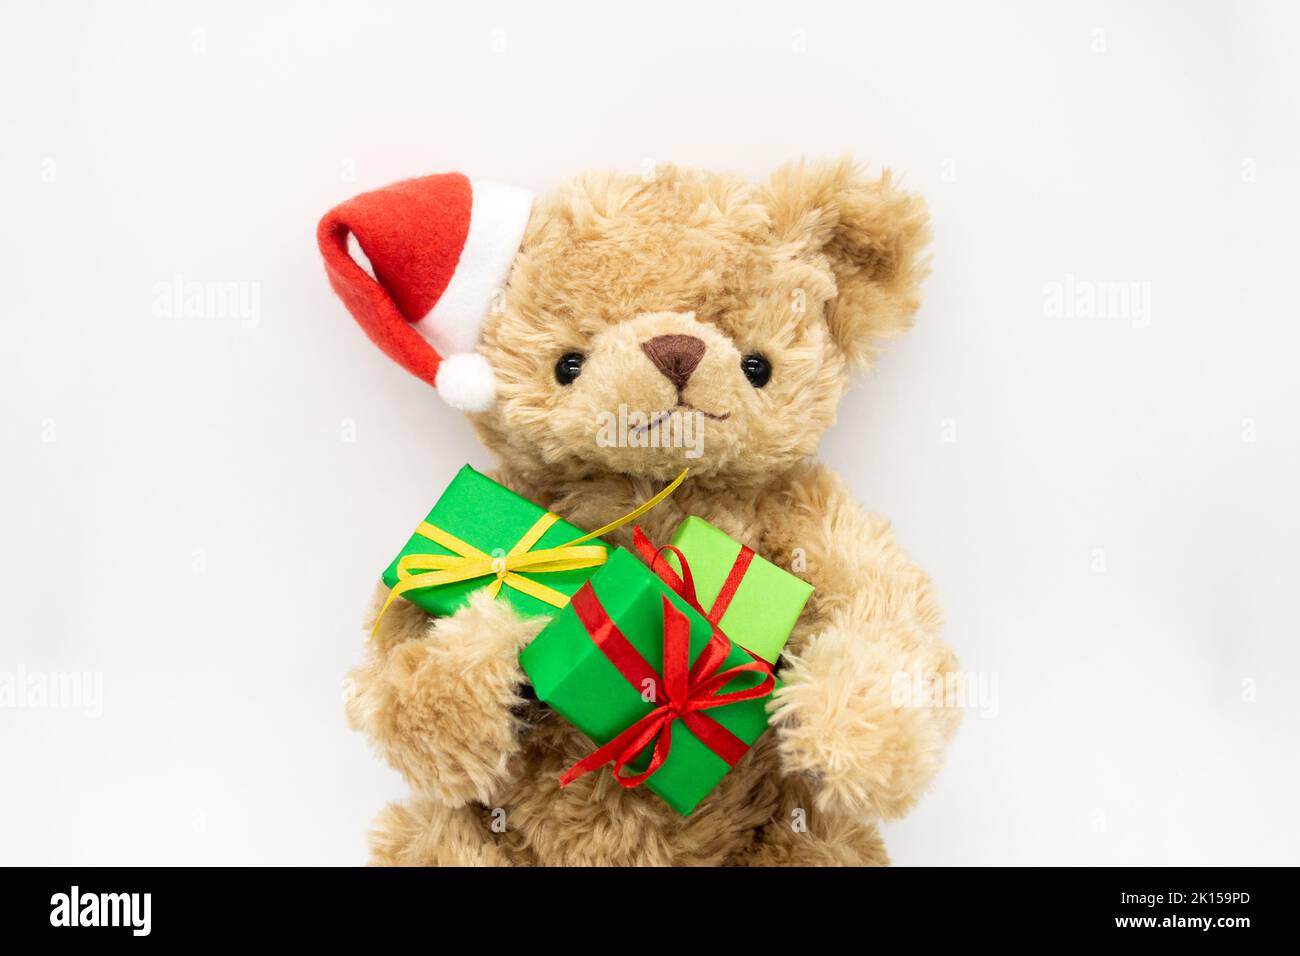 Un ours en peluche Teddy dans un chapeau de Père Noël rouge avec pompon sur une oreille, tenant des boîtes-cadeaux vertes dans ses pattes.Arrière-plan blanc, espace de copie.Le co Banque D'Images